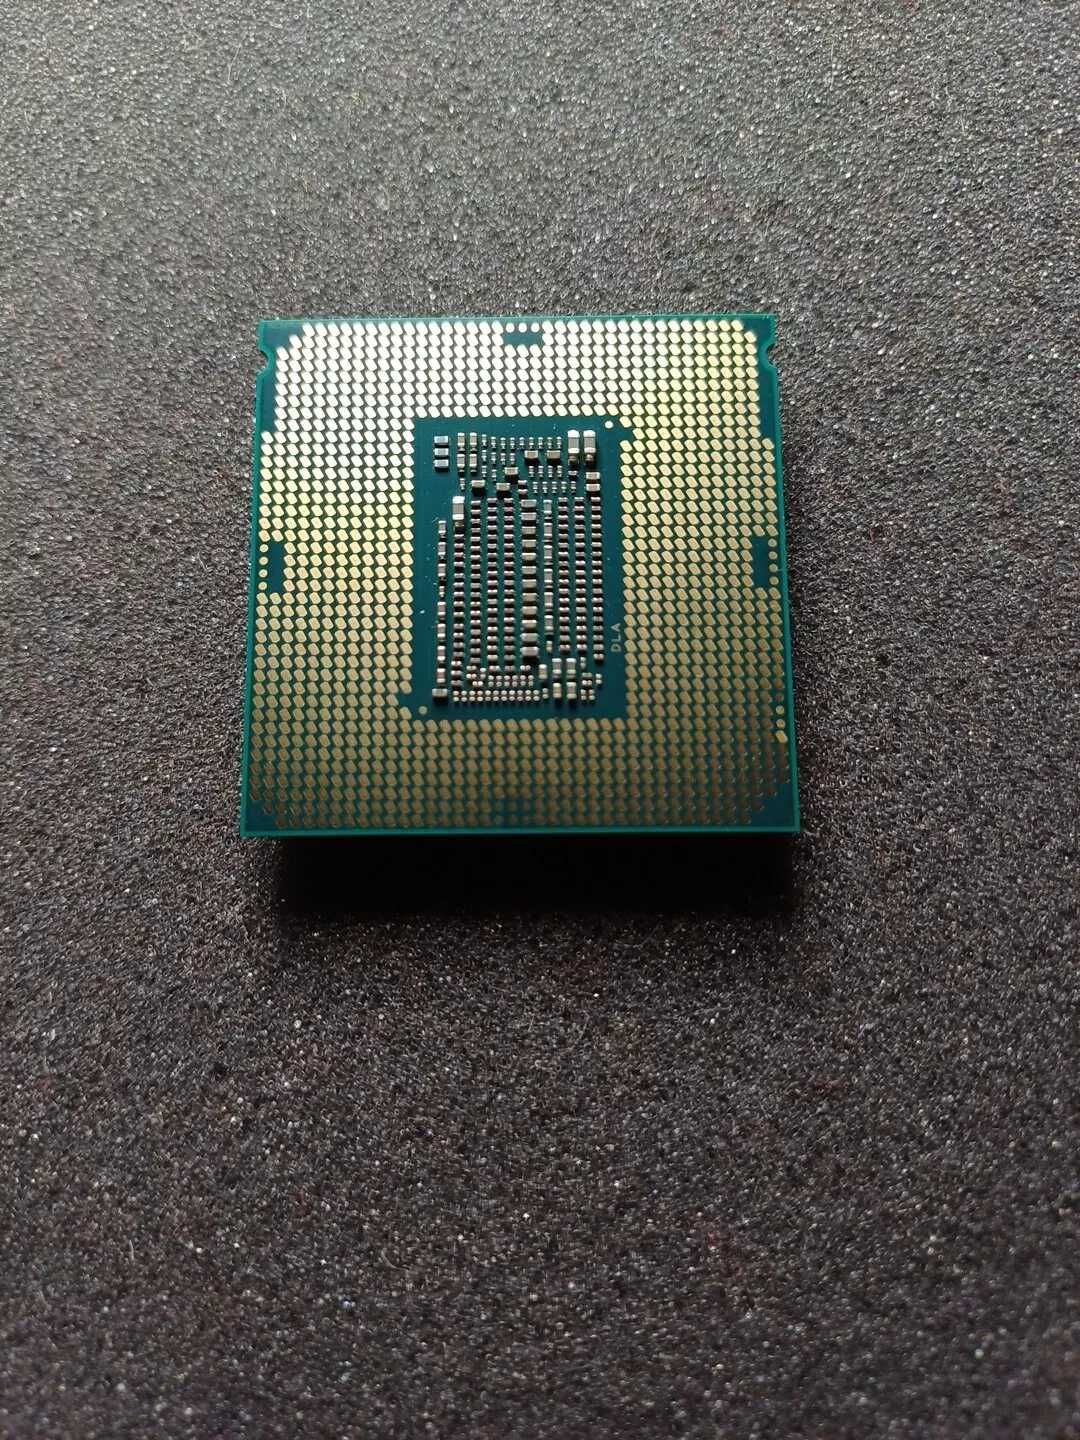 Процесор Intel Coffee Lake Core i5-9400F 6-Core (up to 4.10GHz )